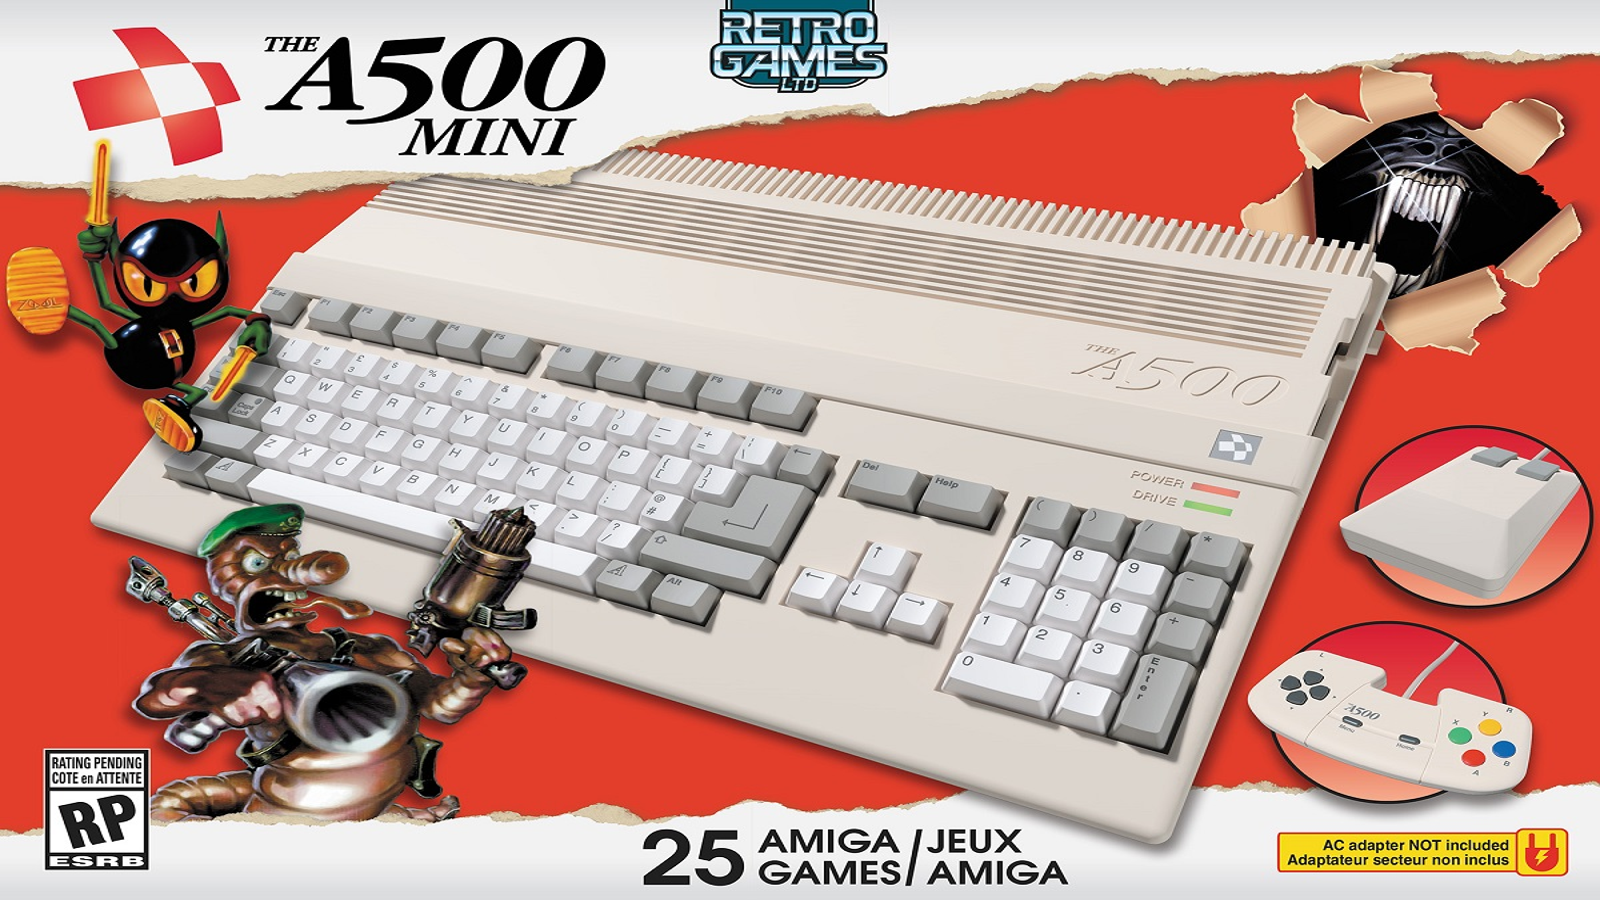 WholesGame on X: Amiga 500 Mini console announced The miniature